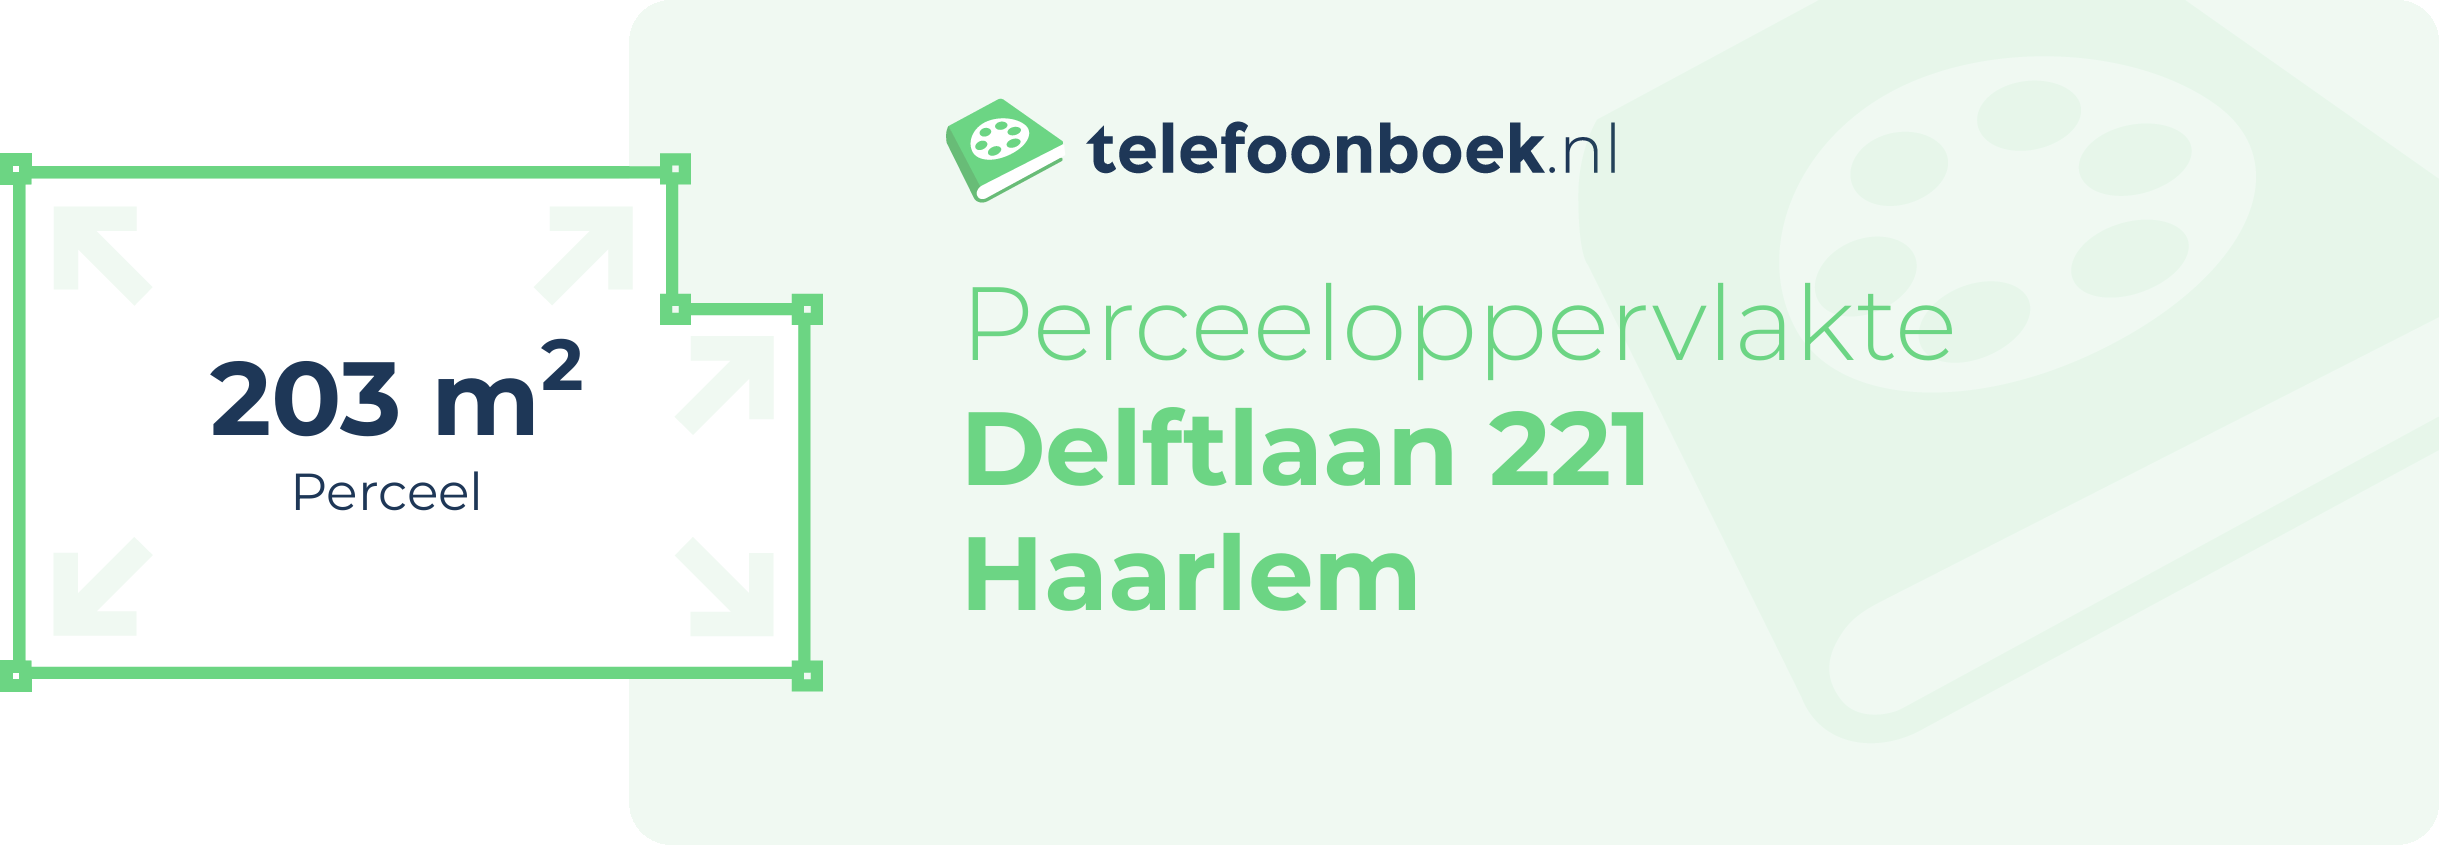 Perceeloppervlakte Delftlaan 221 Haarlem